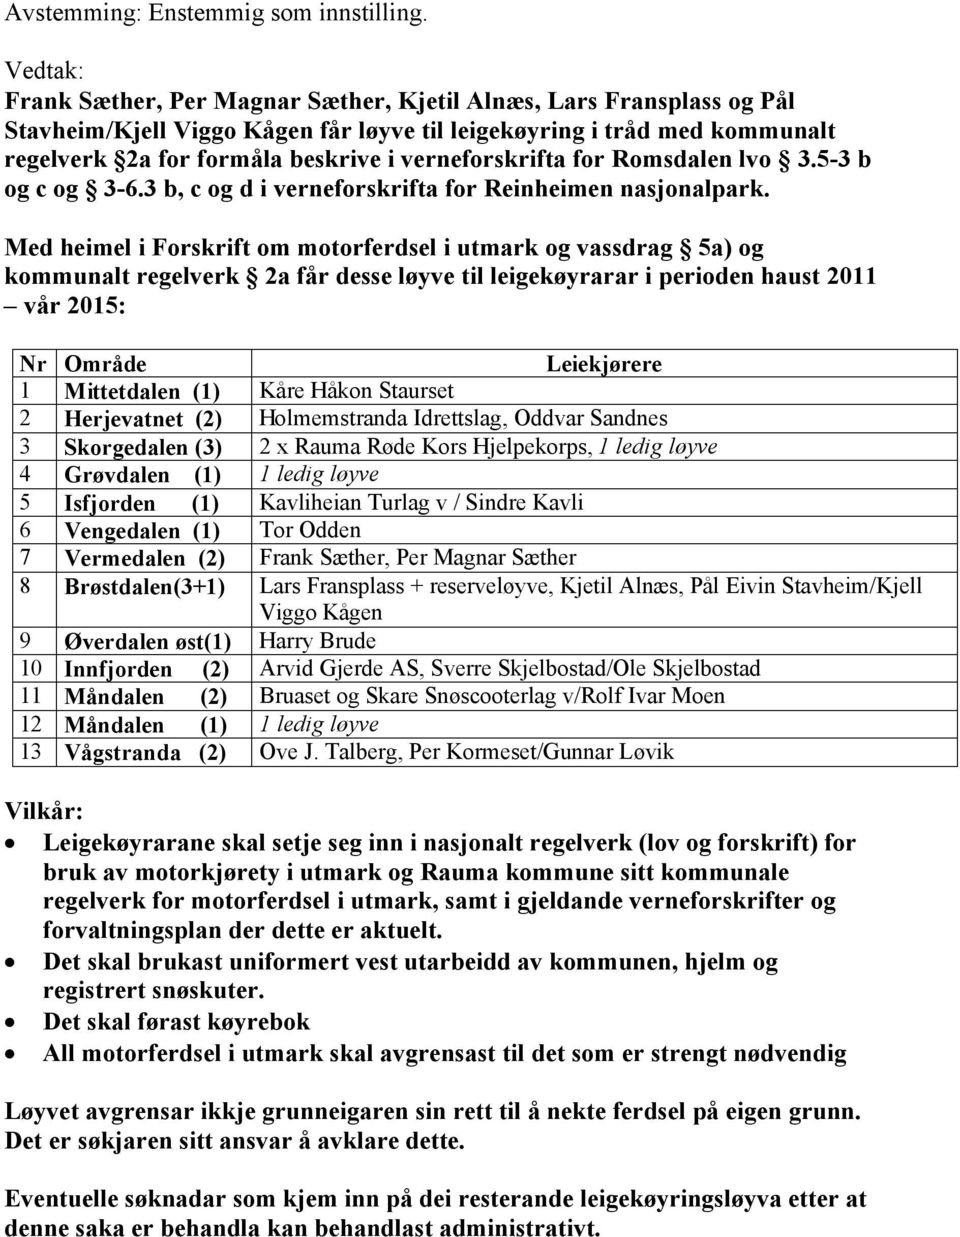 verneforskrifta for Romsdalen lvo 3.5-3 b og c og 3-6.3 b, c og d i verneforskrifta for Reinheimen nasjonalpark.